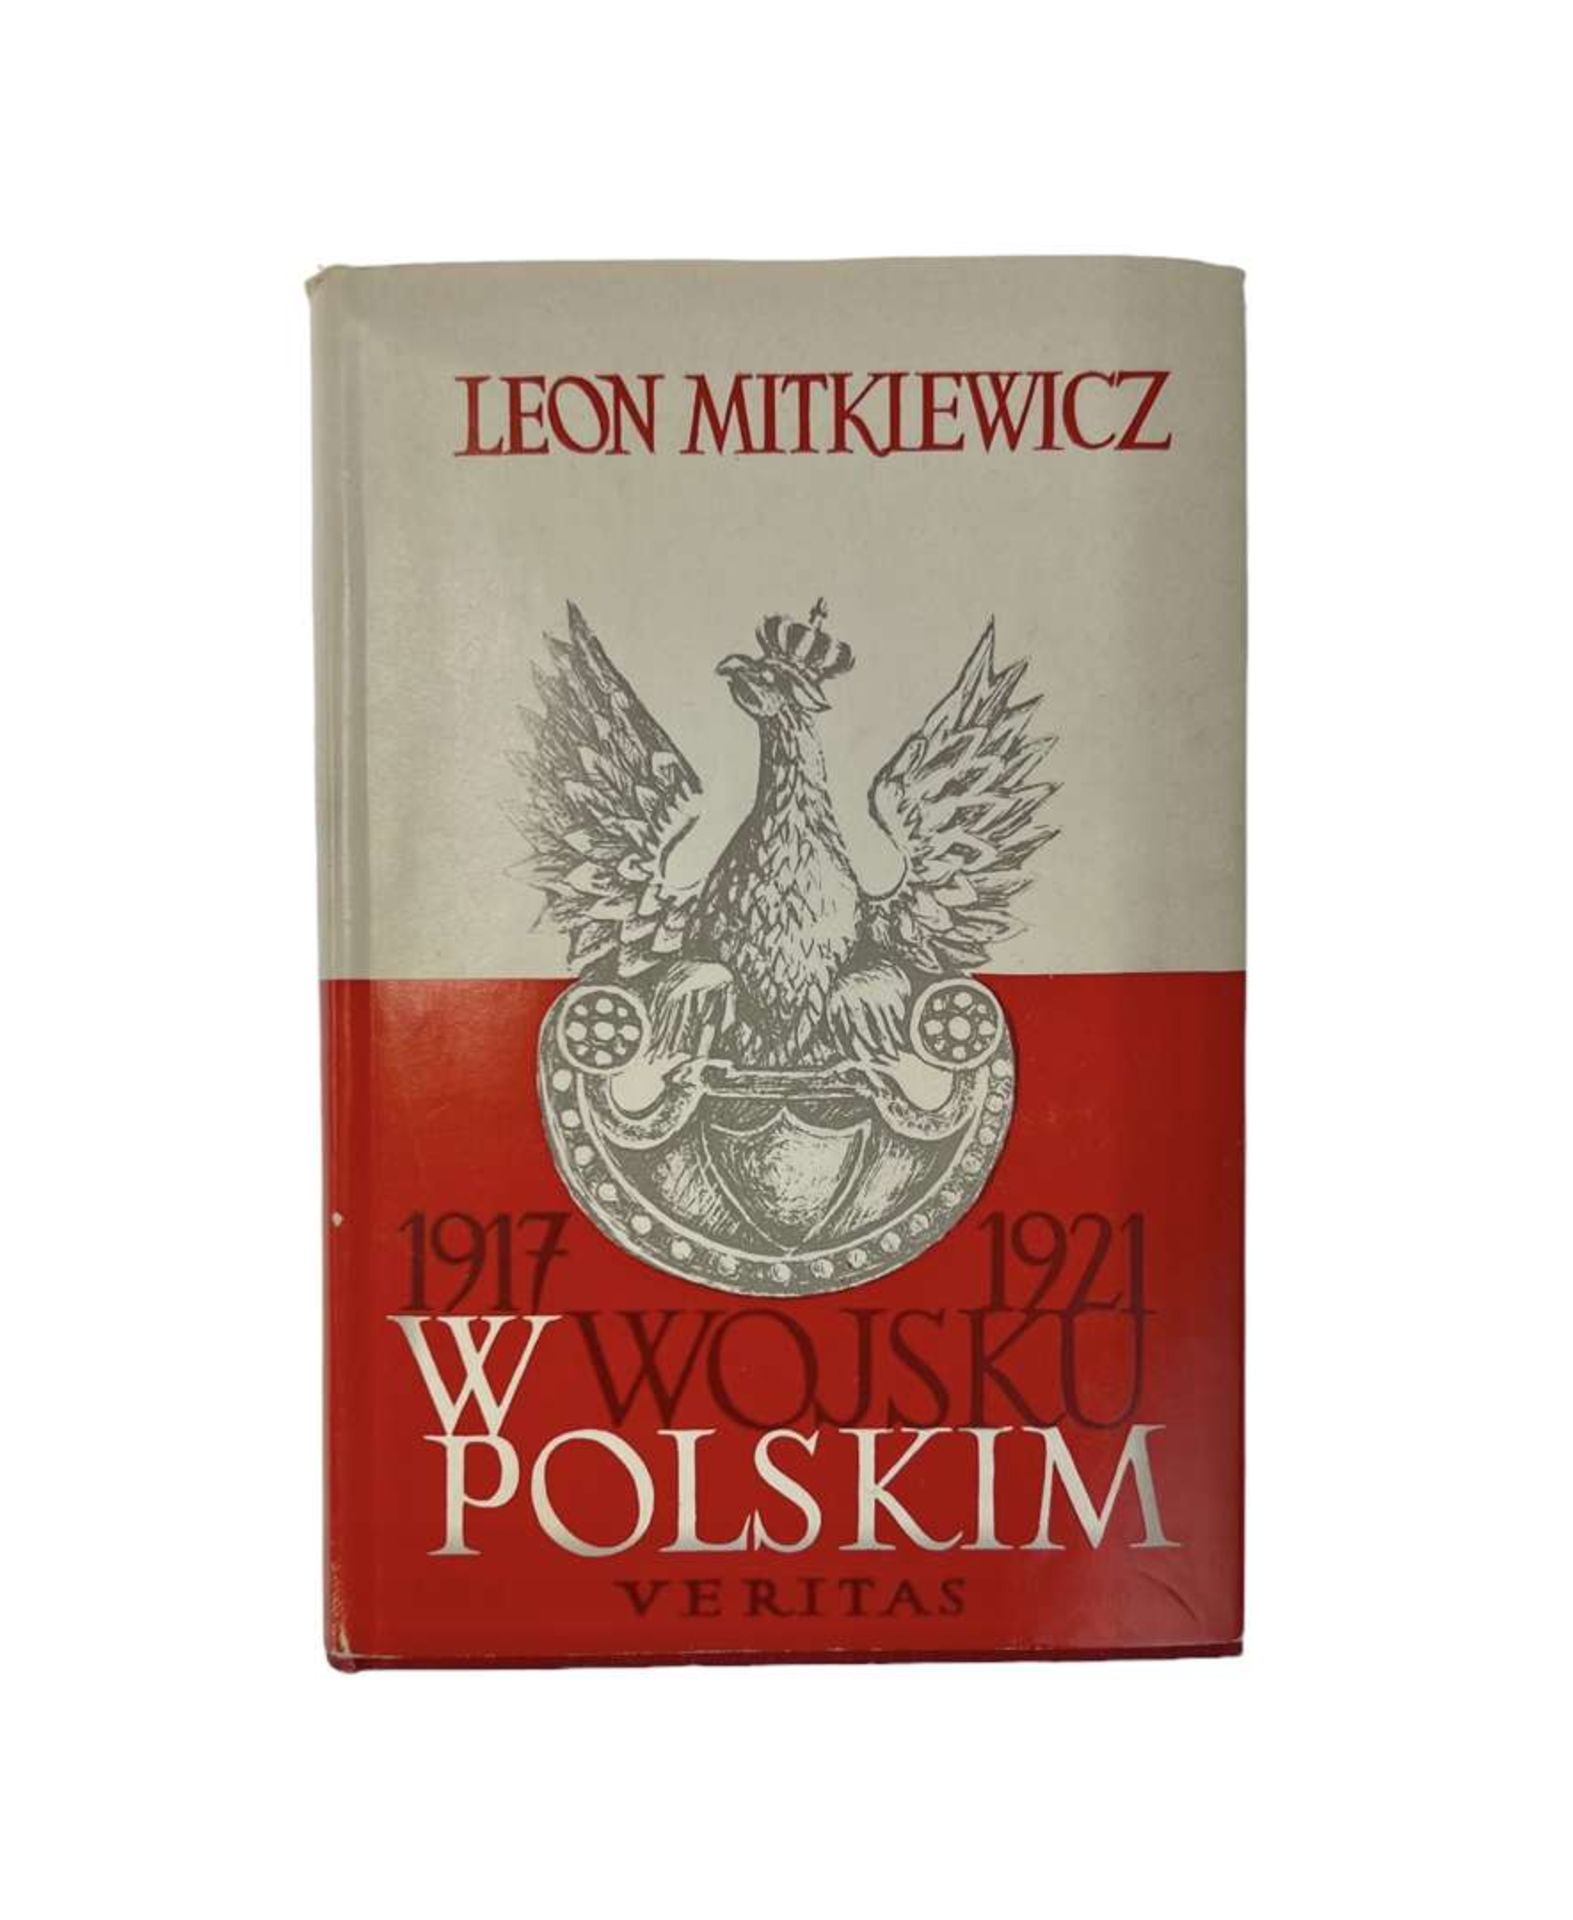 WW II Book “W Wojsku Polskim 1917 - 1921”. Leon Mientkiewicz